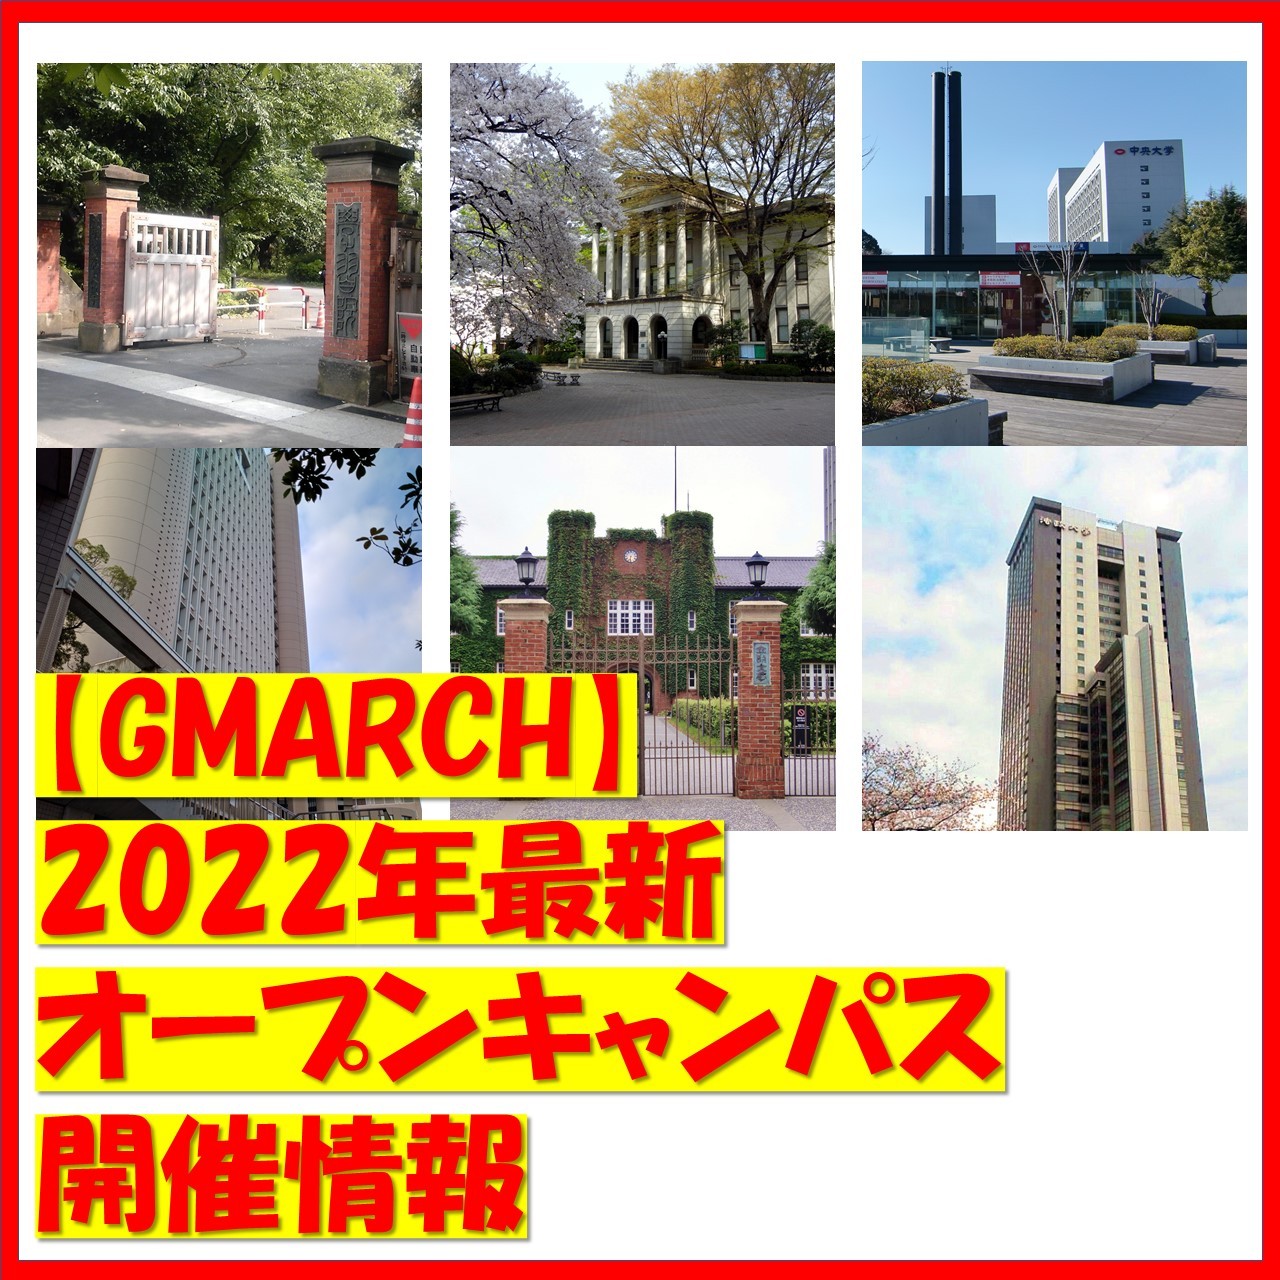 【GMARCH】2022年最新オープンキャンパス開催情報